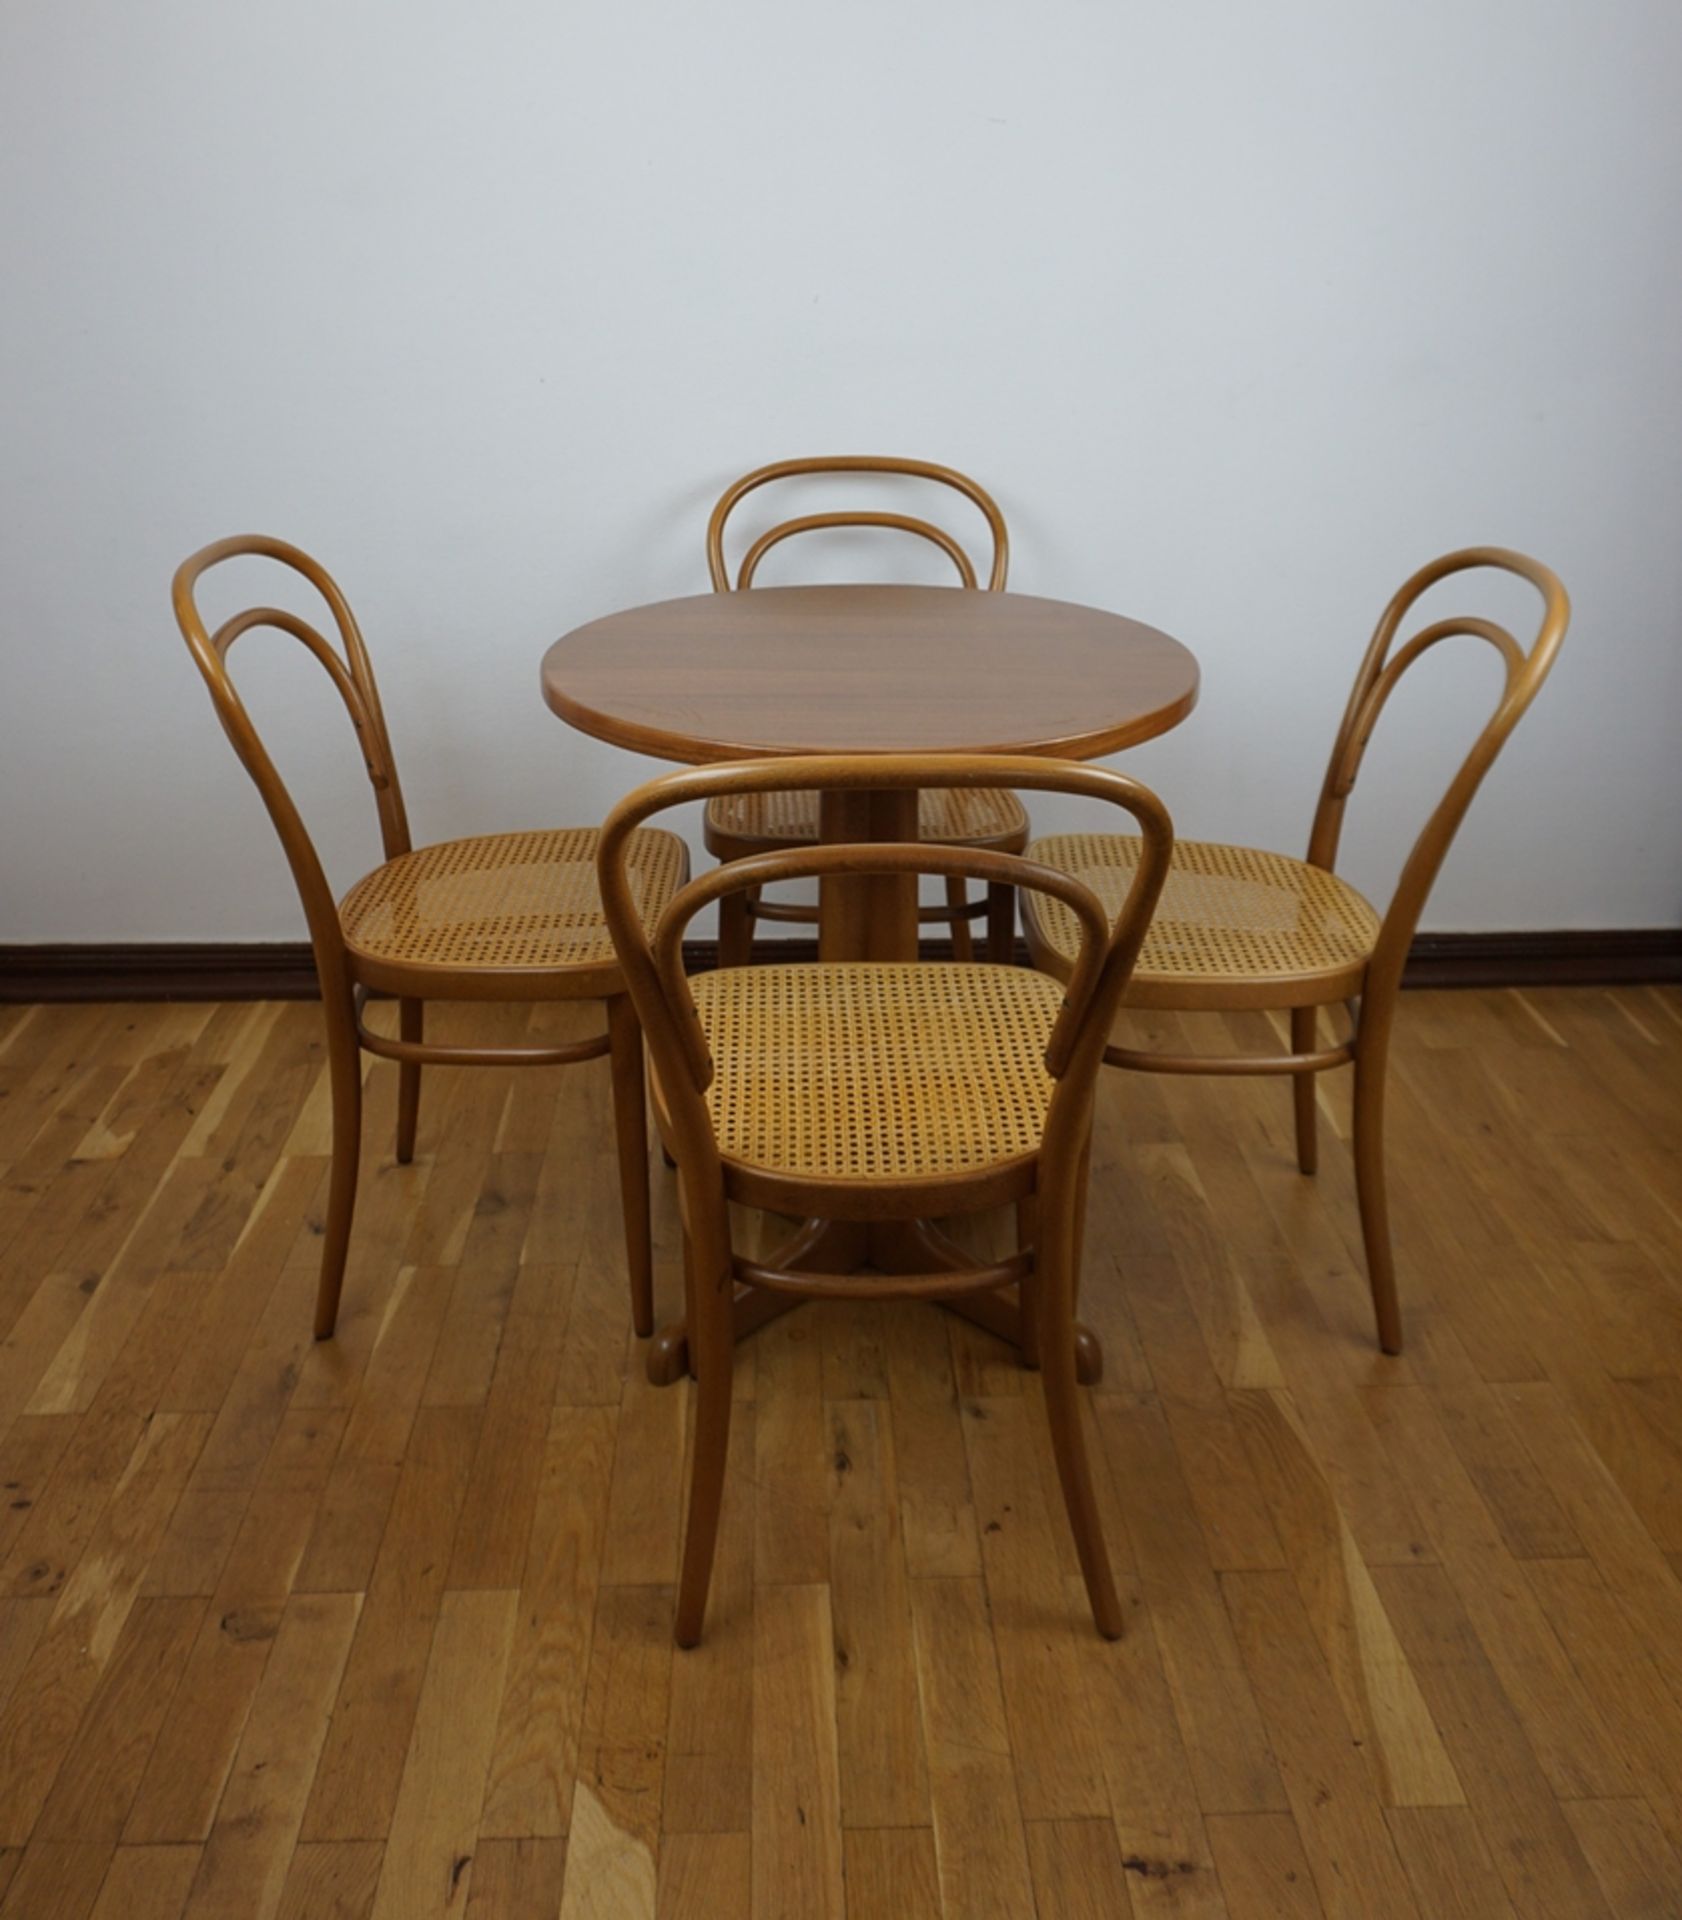 Runder Tisch mit 4 Kaffeehausstühlen, Modell 214, Thonet, 1980er Jahre - Image 2 of 8